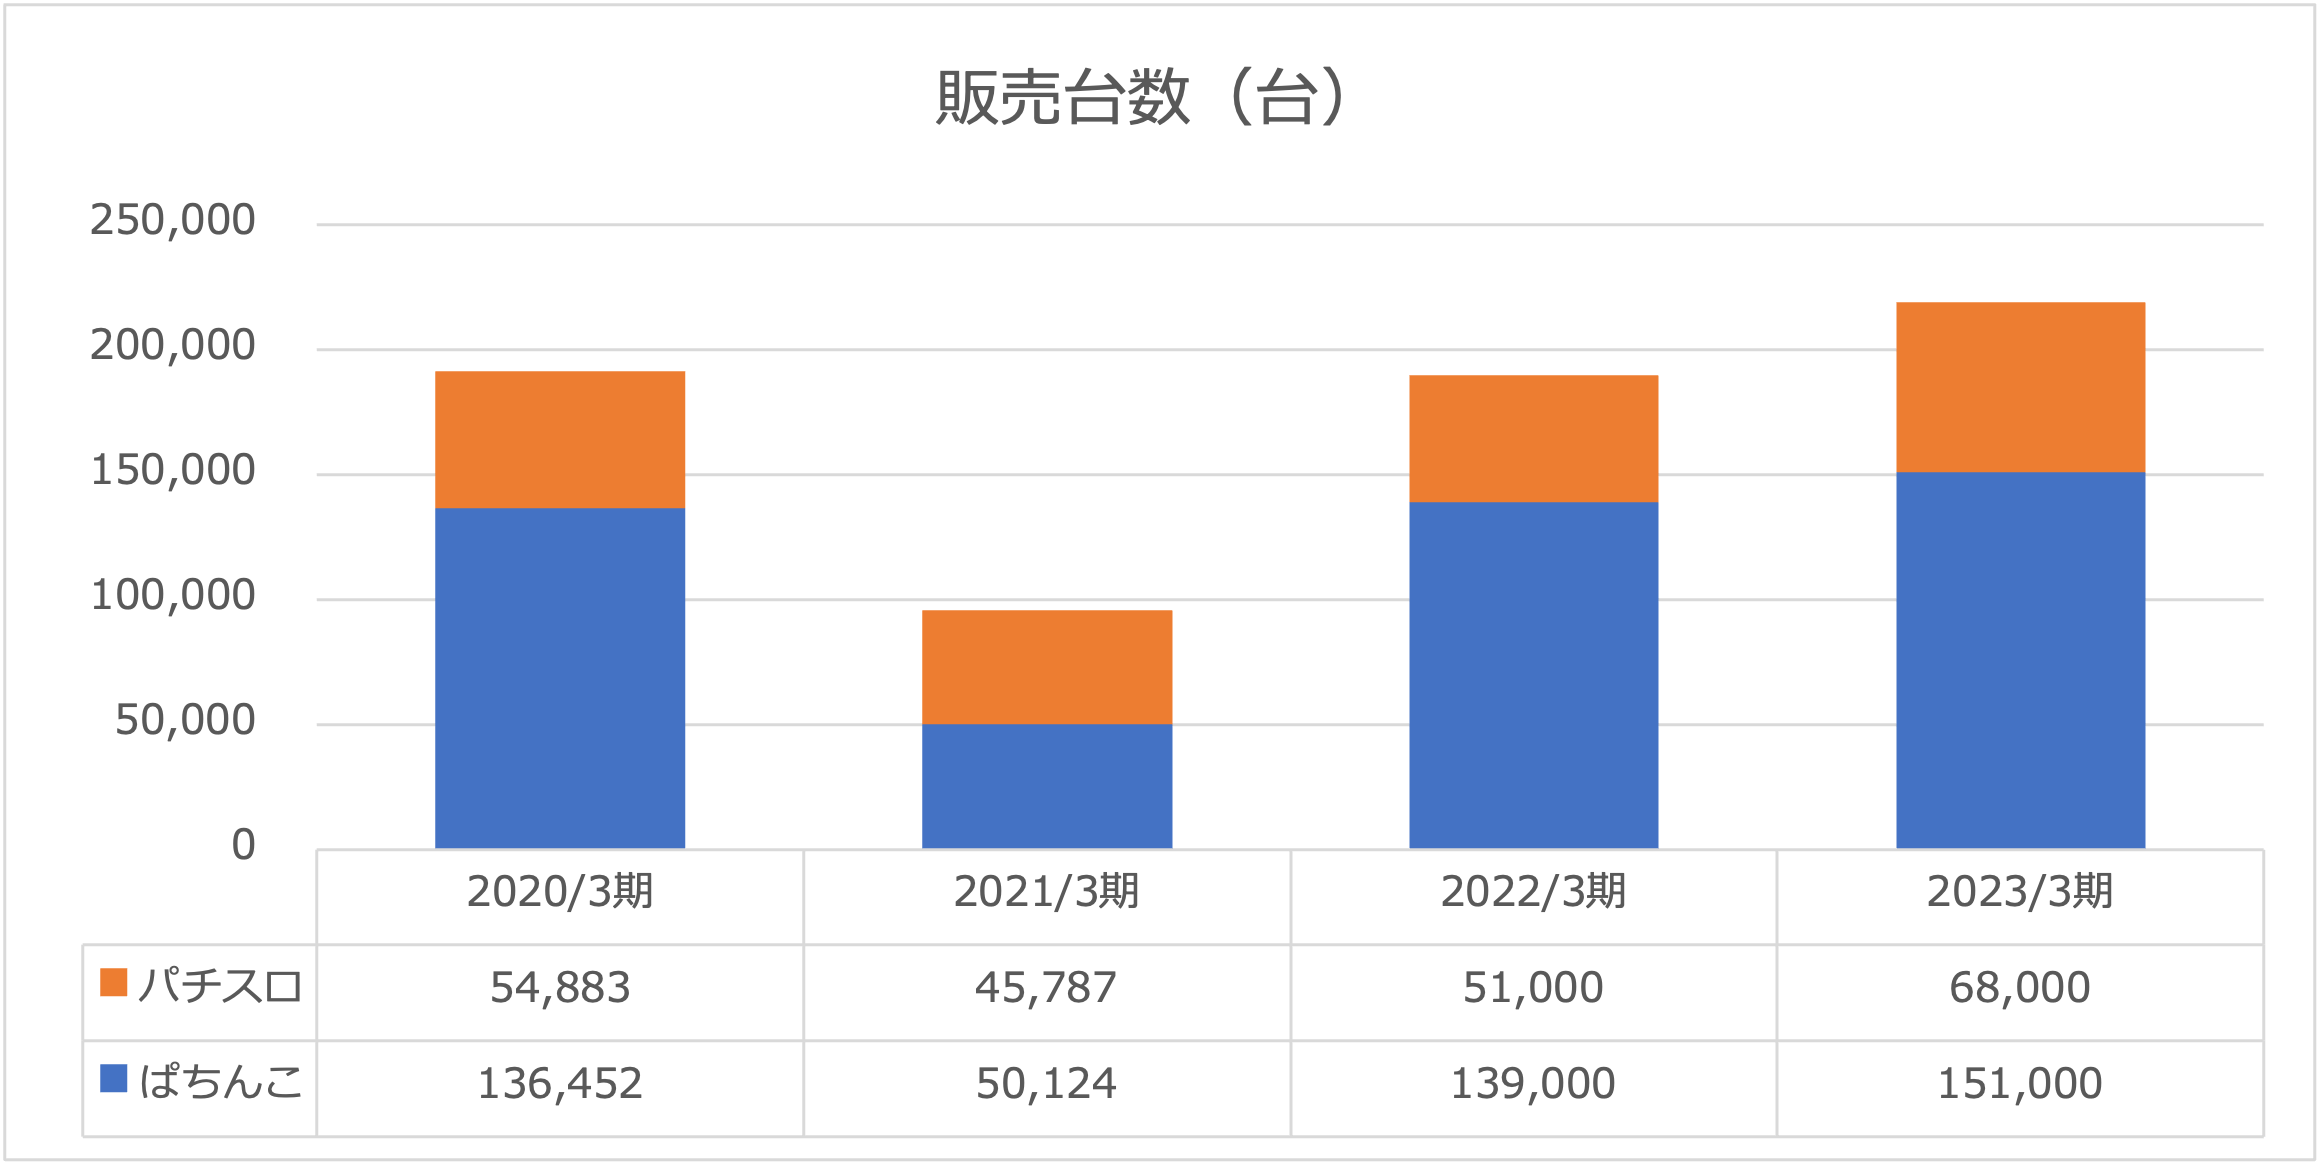 円谷フィールズホールディングス株式会社販売台数2023